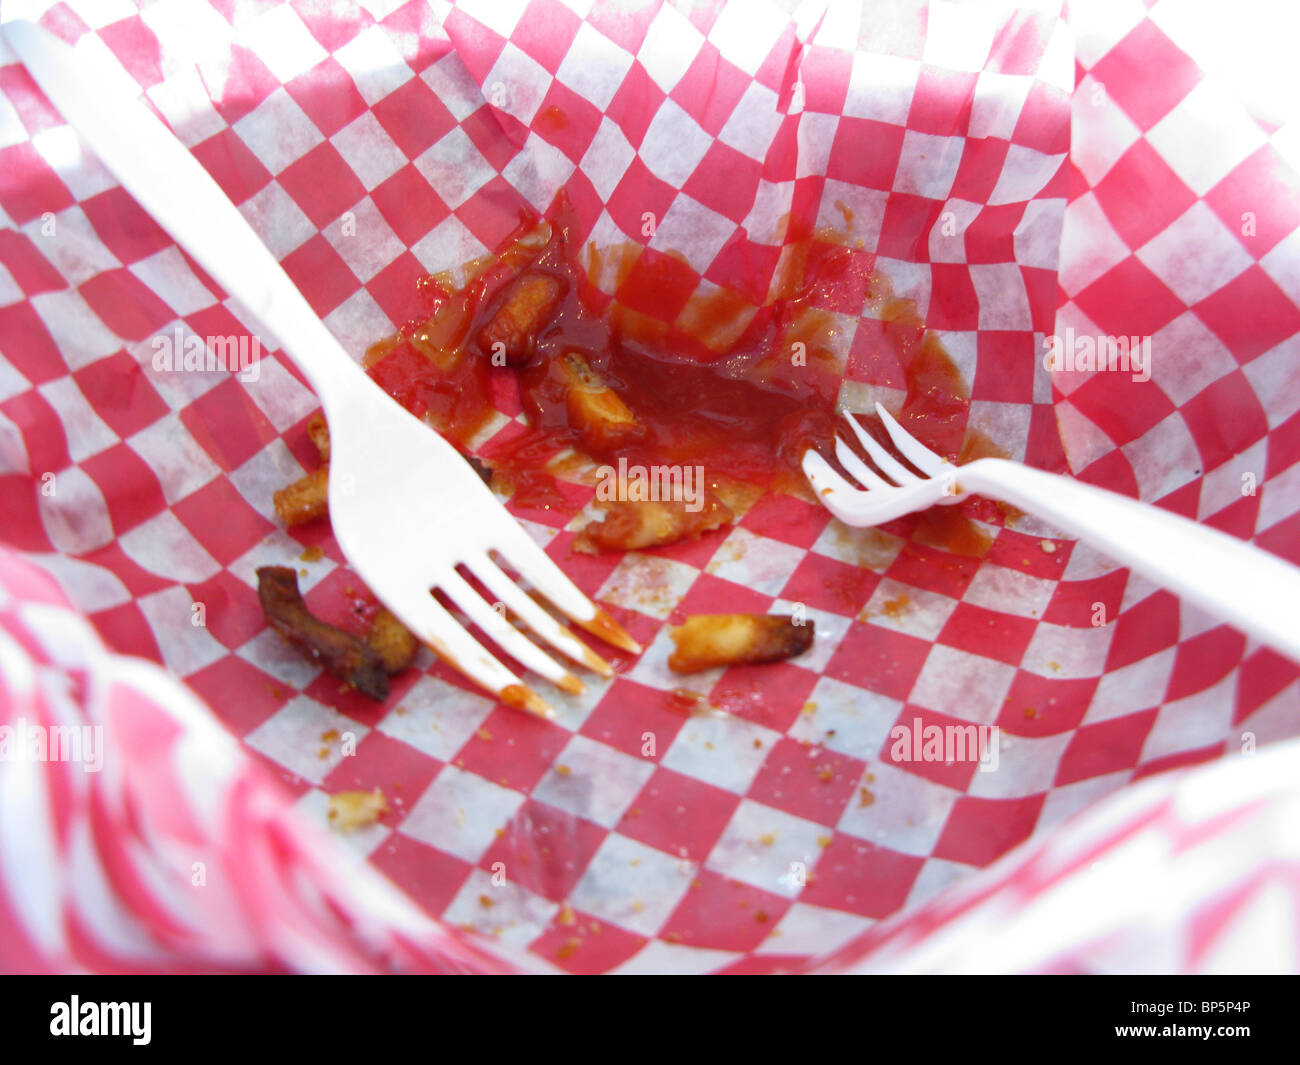 Dos horquillas de plástico blanco en una canasta de cuadros rojos y blancos con el comido restos de patatas fritas y salsa de tomate. Foto de stock